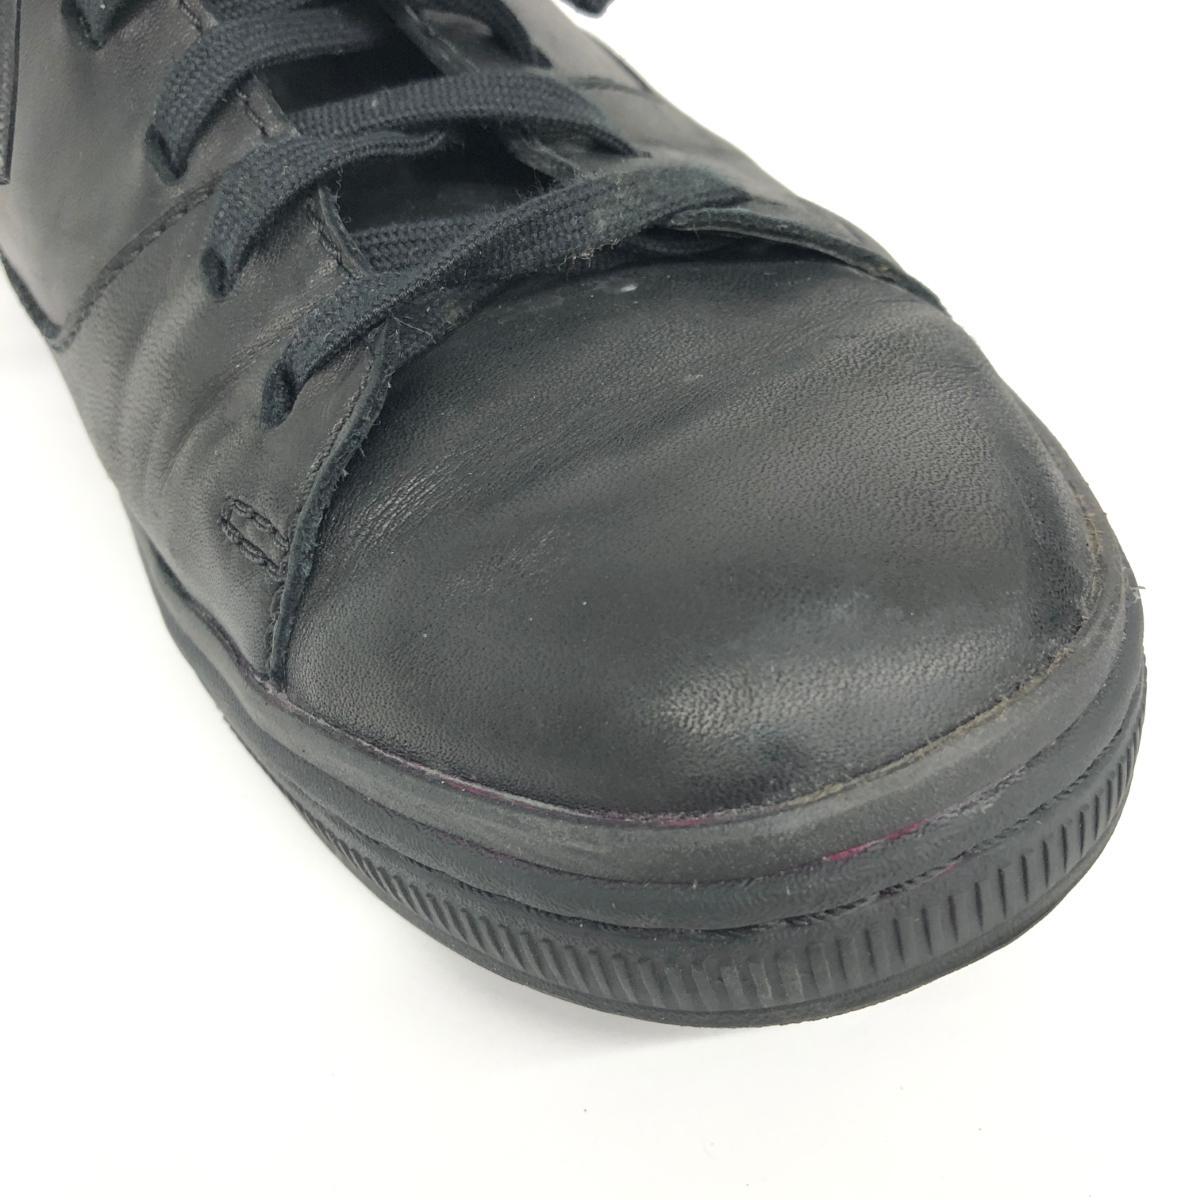 *Clarks Clarks подушка подошва спортивные туфли US7 1/2* чёрная кожа мужской обувь обувь sneakers